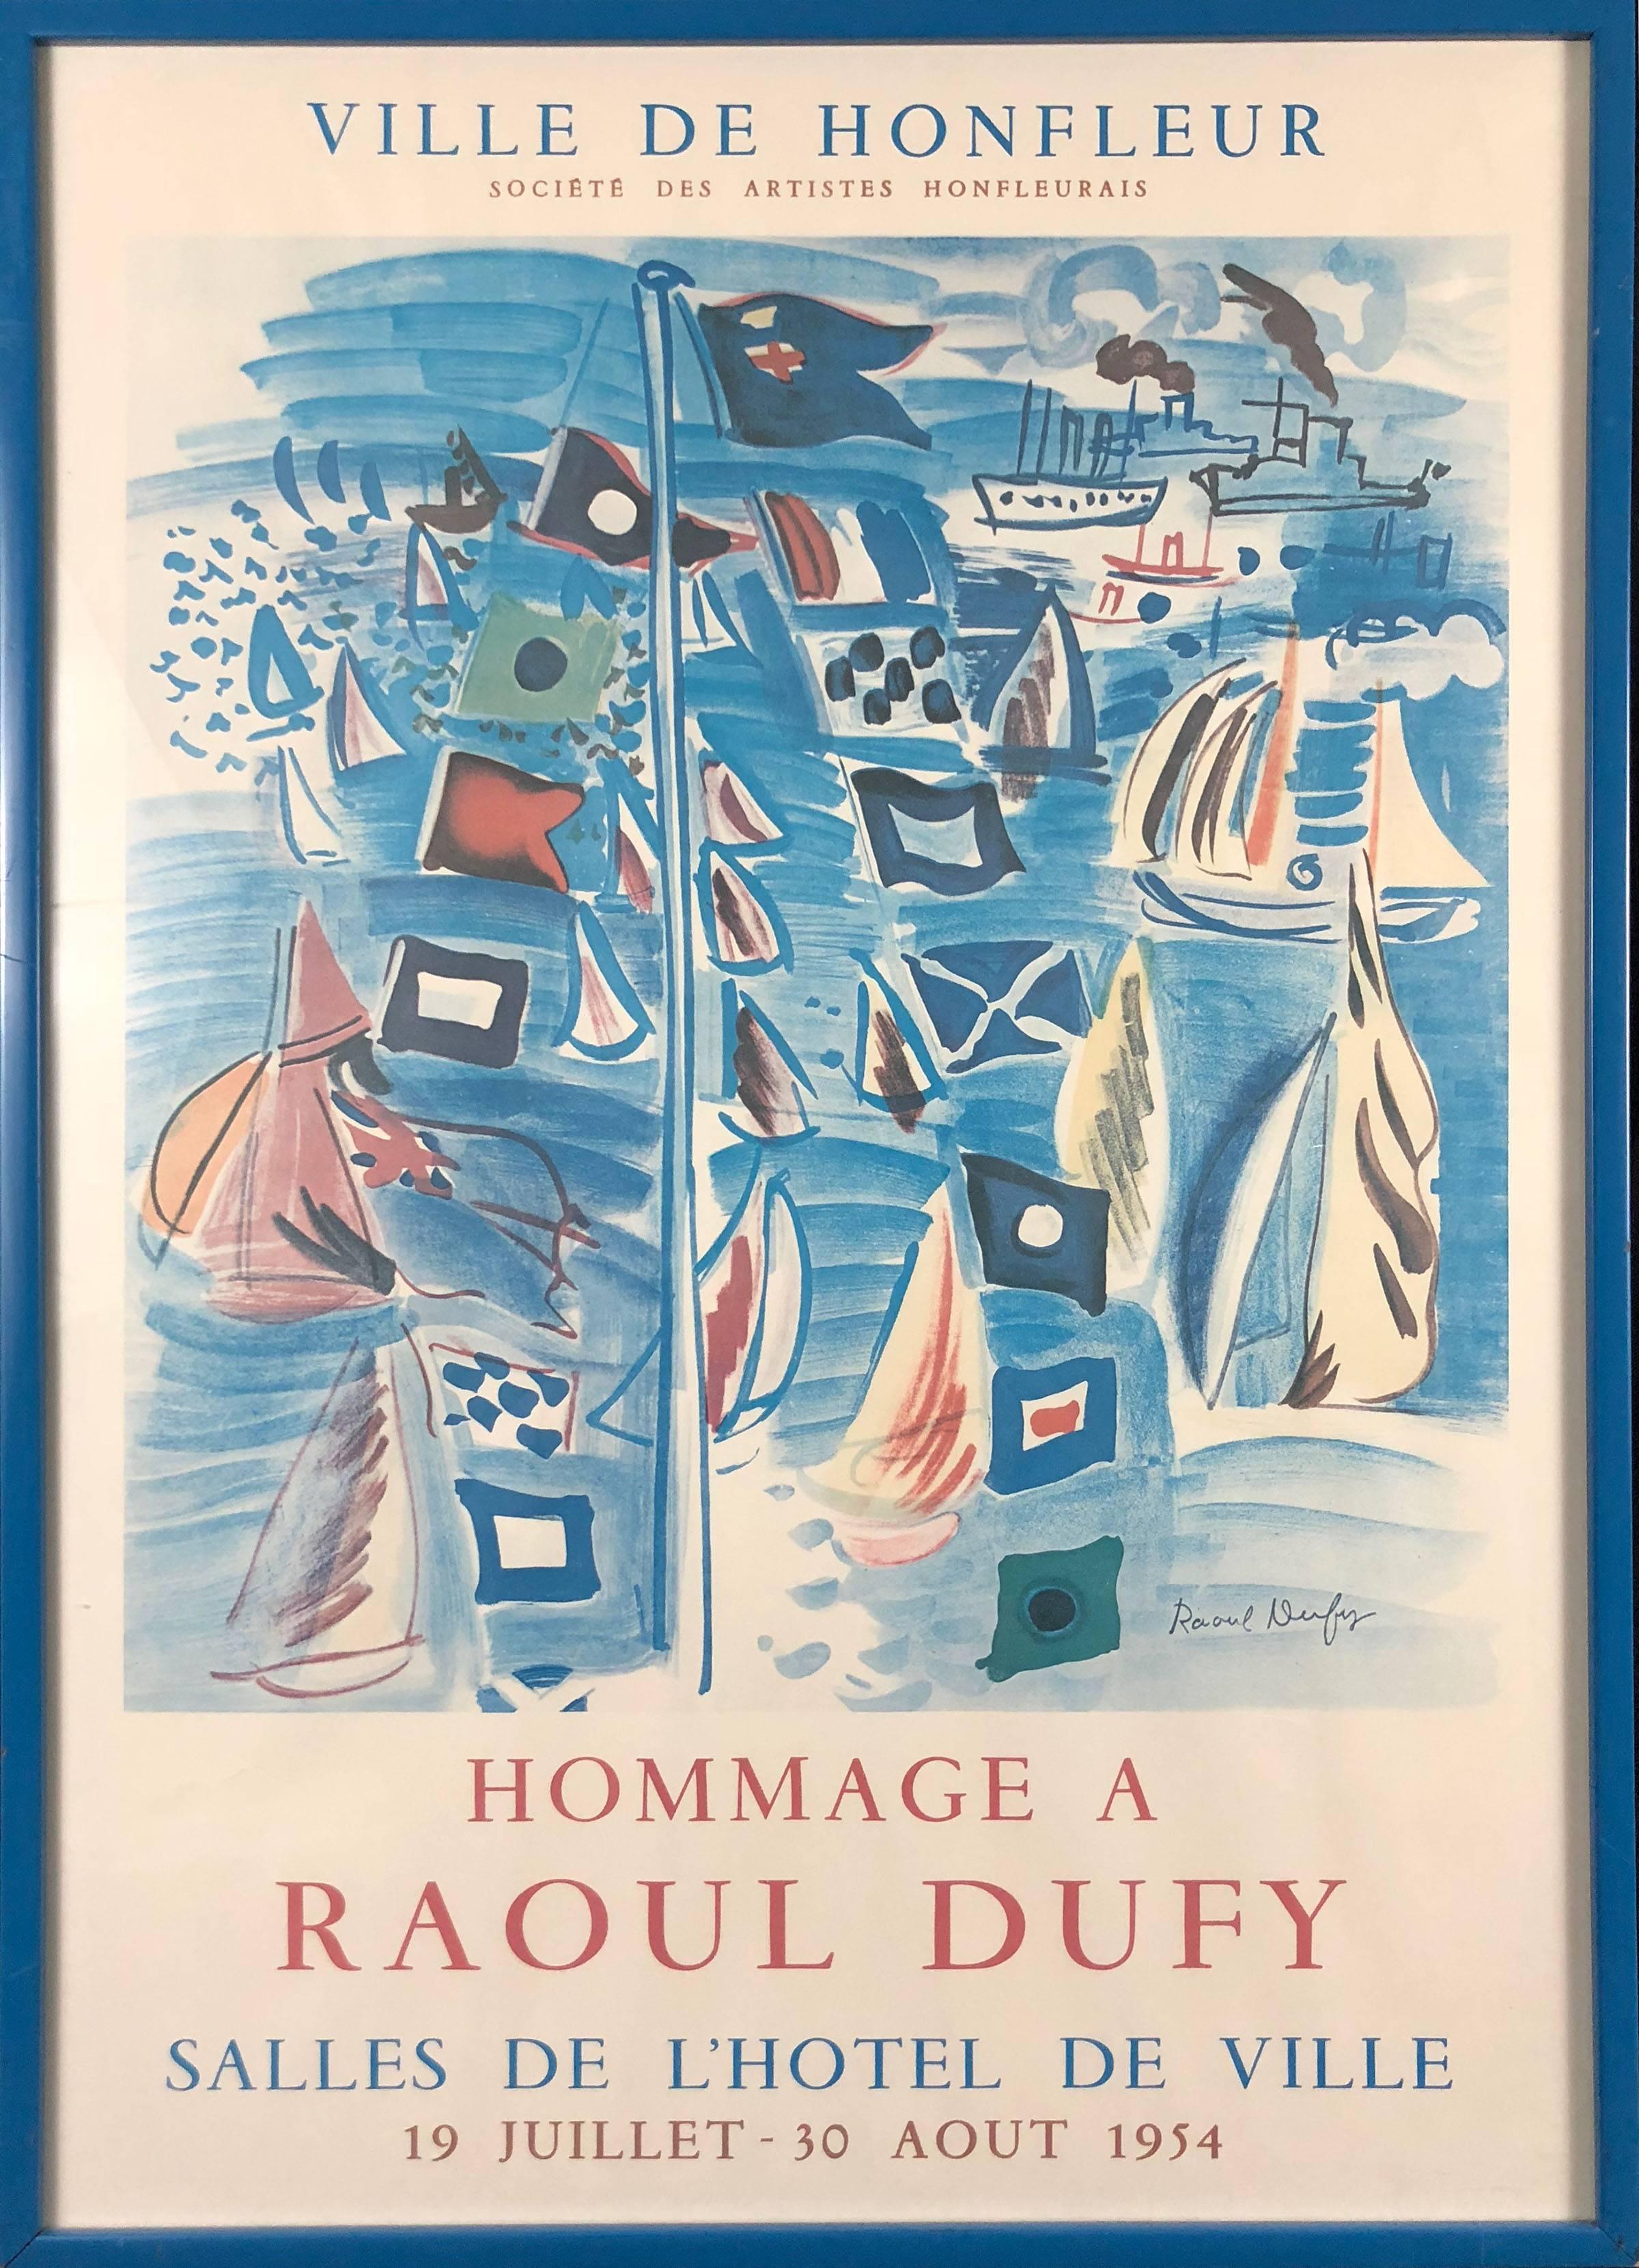 (after) Raoul Dufy Print - Ville de Honfleur Hommage a Raoul Dufy 1954